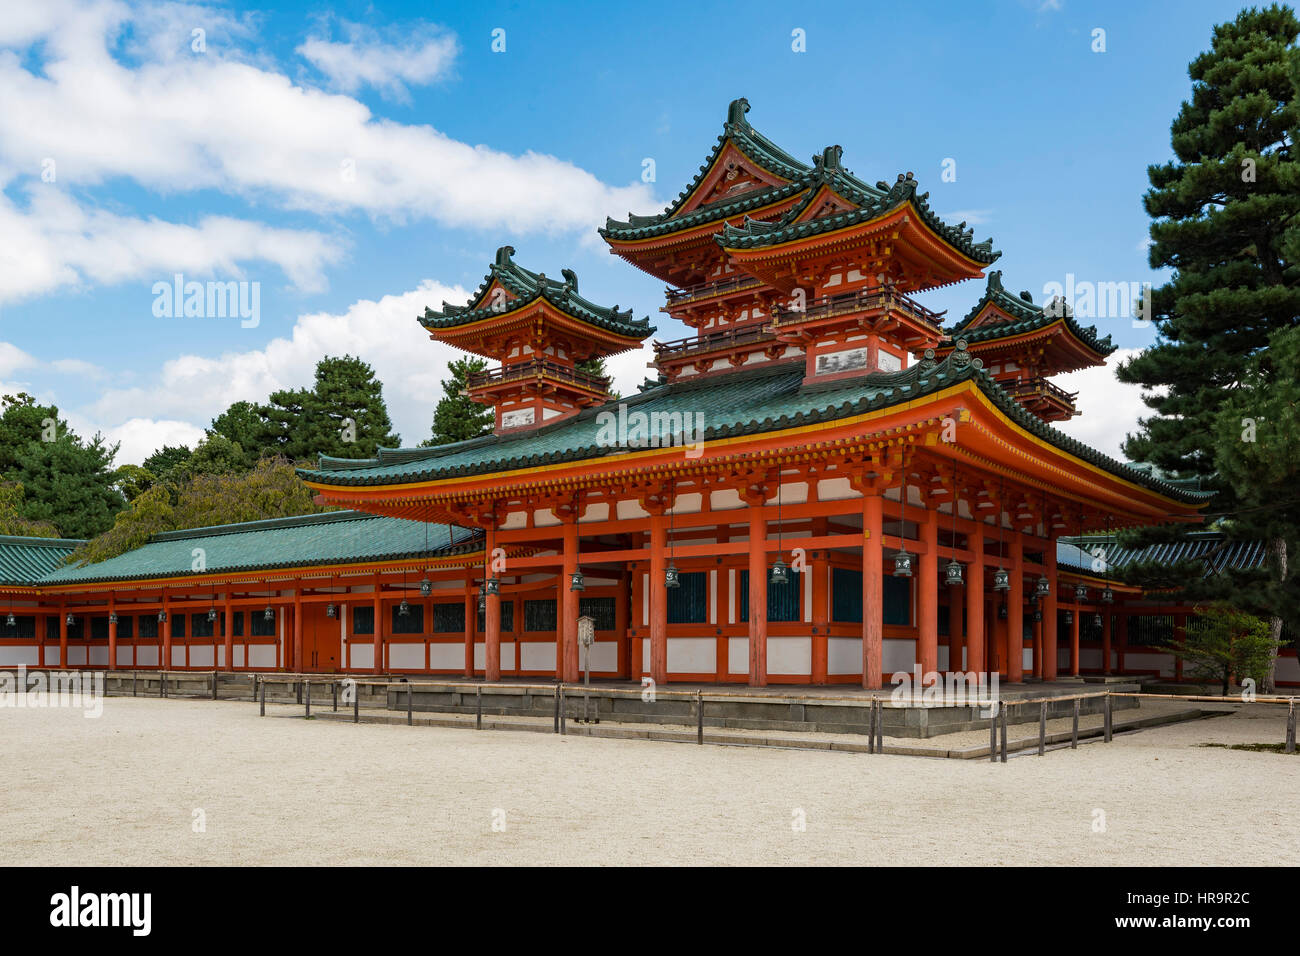 The Heian Shrine is a Shinto shrine located in Sakyo-ku, Kyoto, Japan. Stock Photo